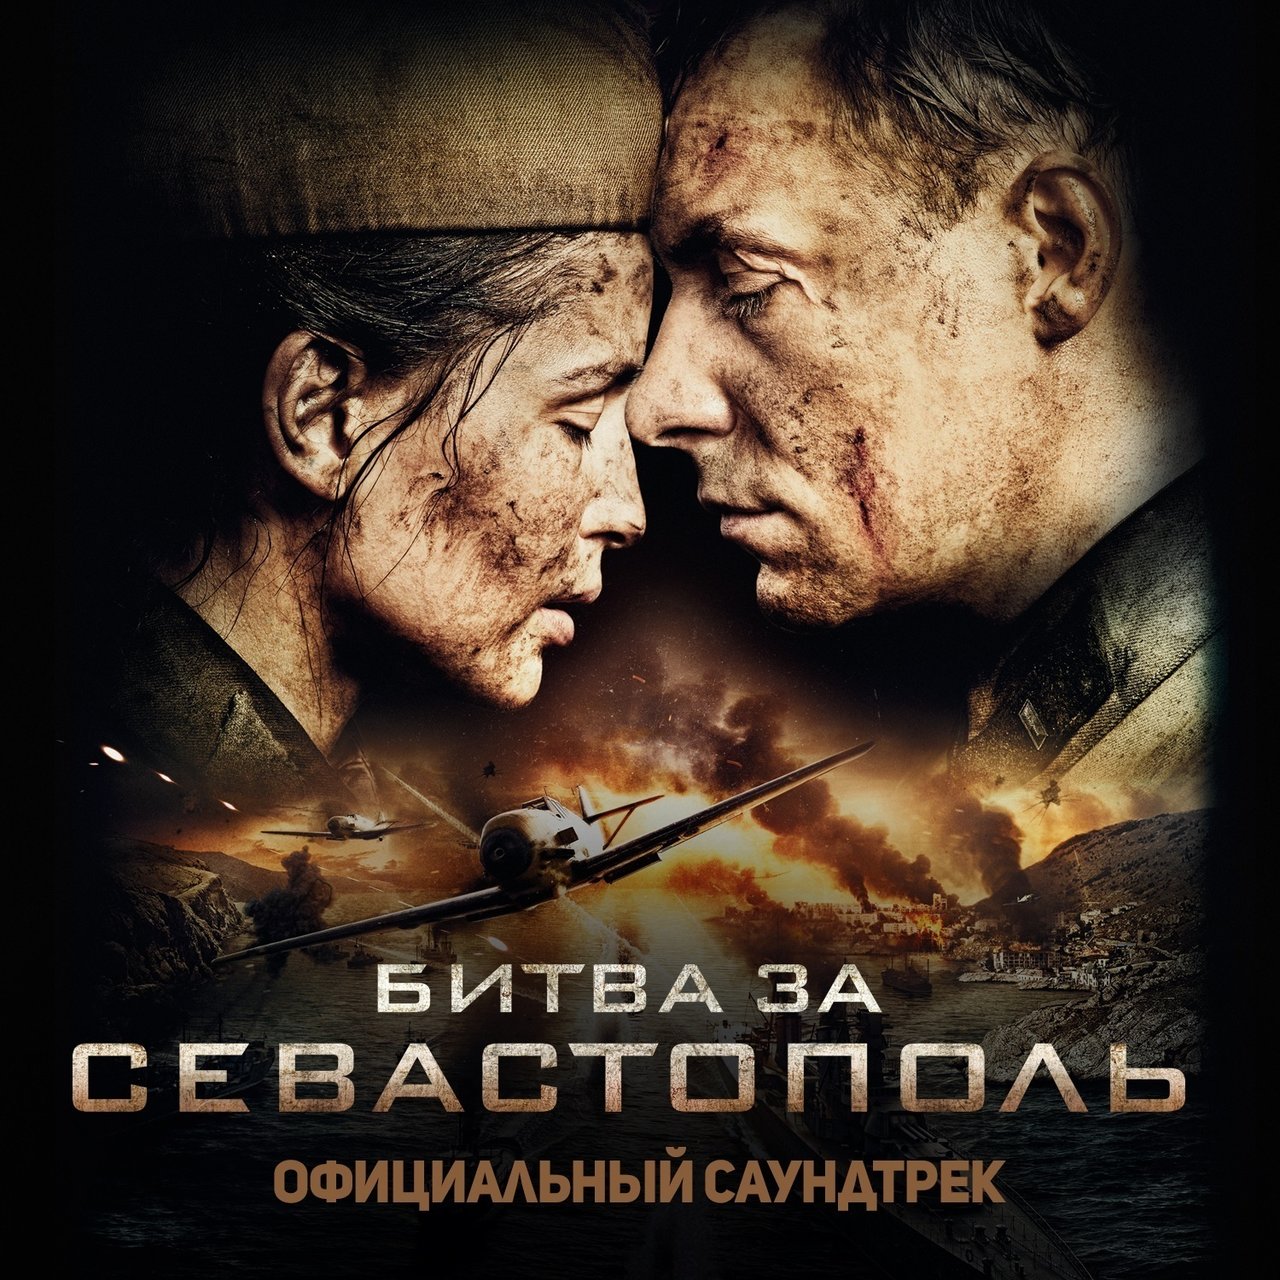 Polina Gagarina — Kukushka cover artwork